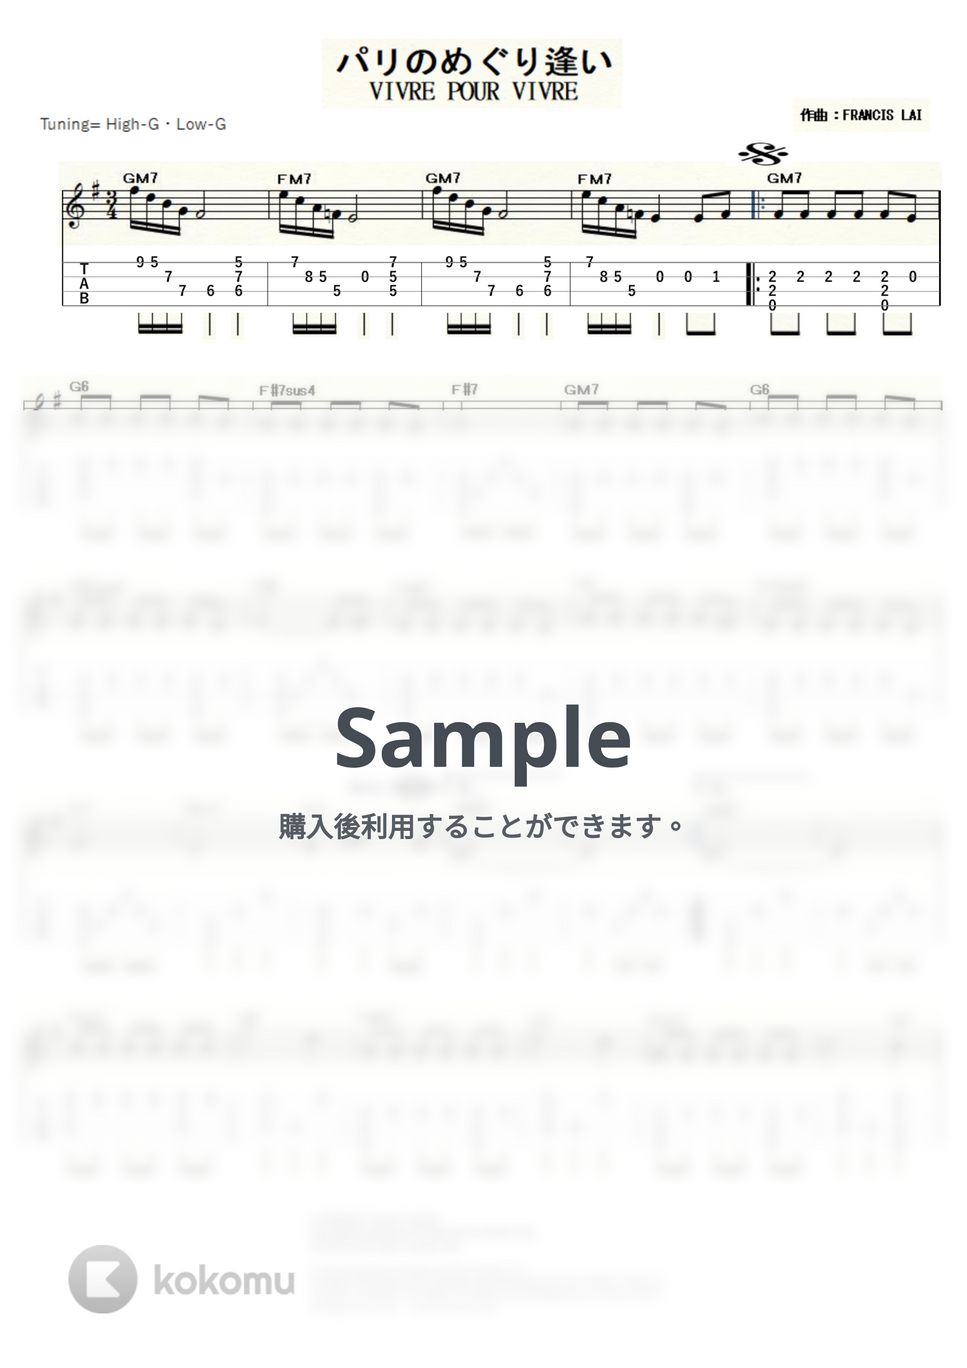 フランシス・レイ - パリのめぐり逢い (ｳｸﾚﾚｿﾛ / High-G・Low-G / 中級) by ukulelepapa